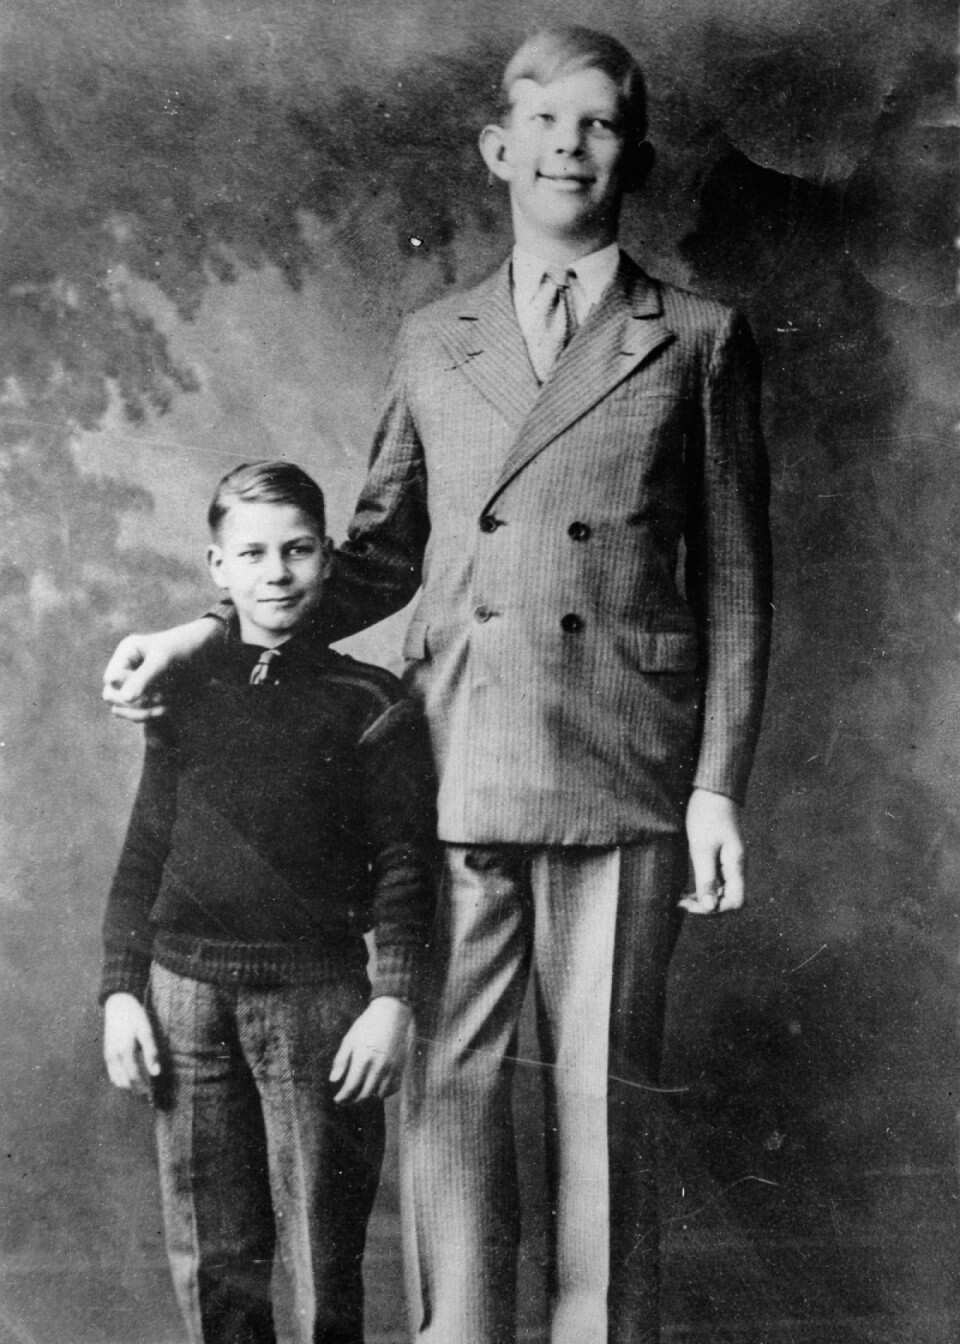 Qui sont les hommes les plus grands du monde et de tous les temps?